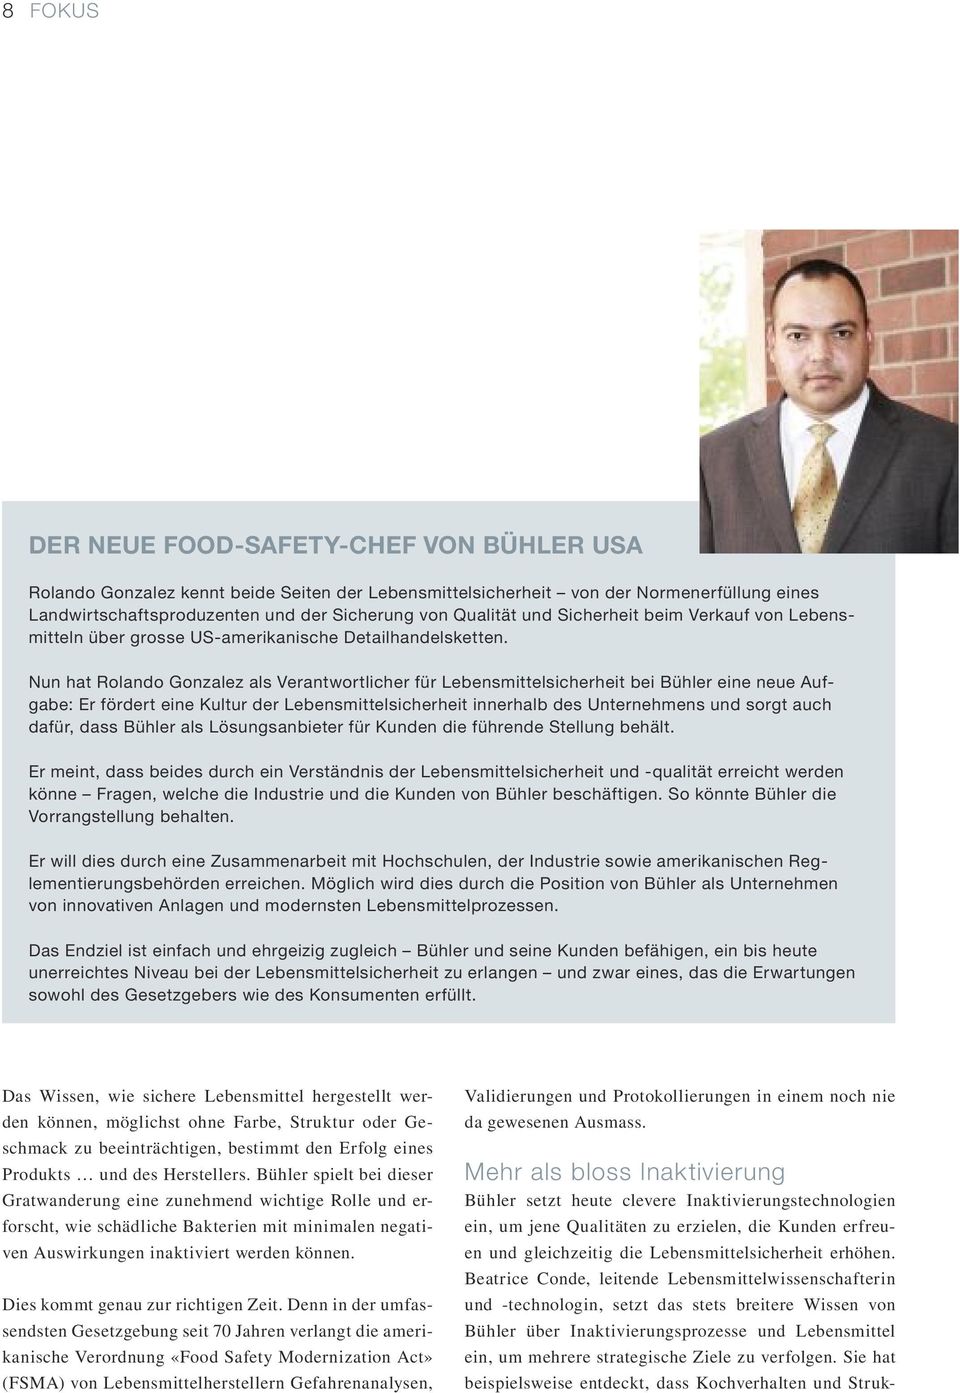 Nun hat Rolando Gonzalez als Verantwortlicher für Lebensmittelsicherheit bei Bühler eine neue Aufgabe: Er fördert eine Kultur der Lebensmittelsicherheit innerhalb des Unternehmens und sorgt auch